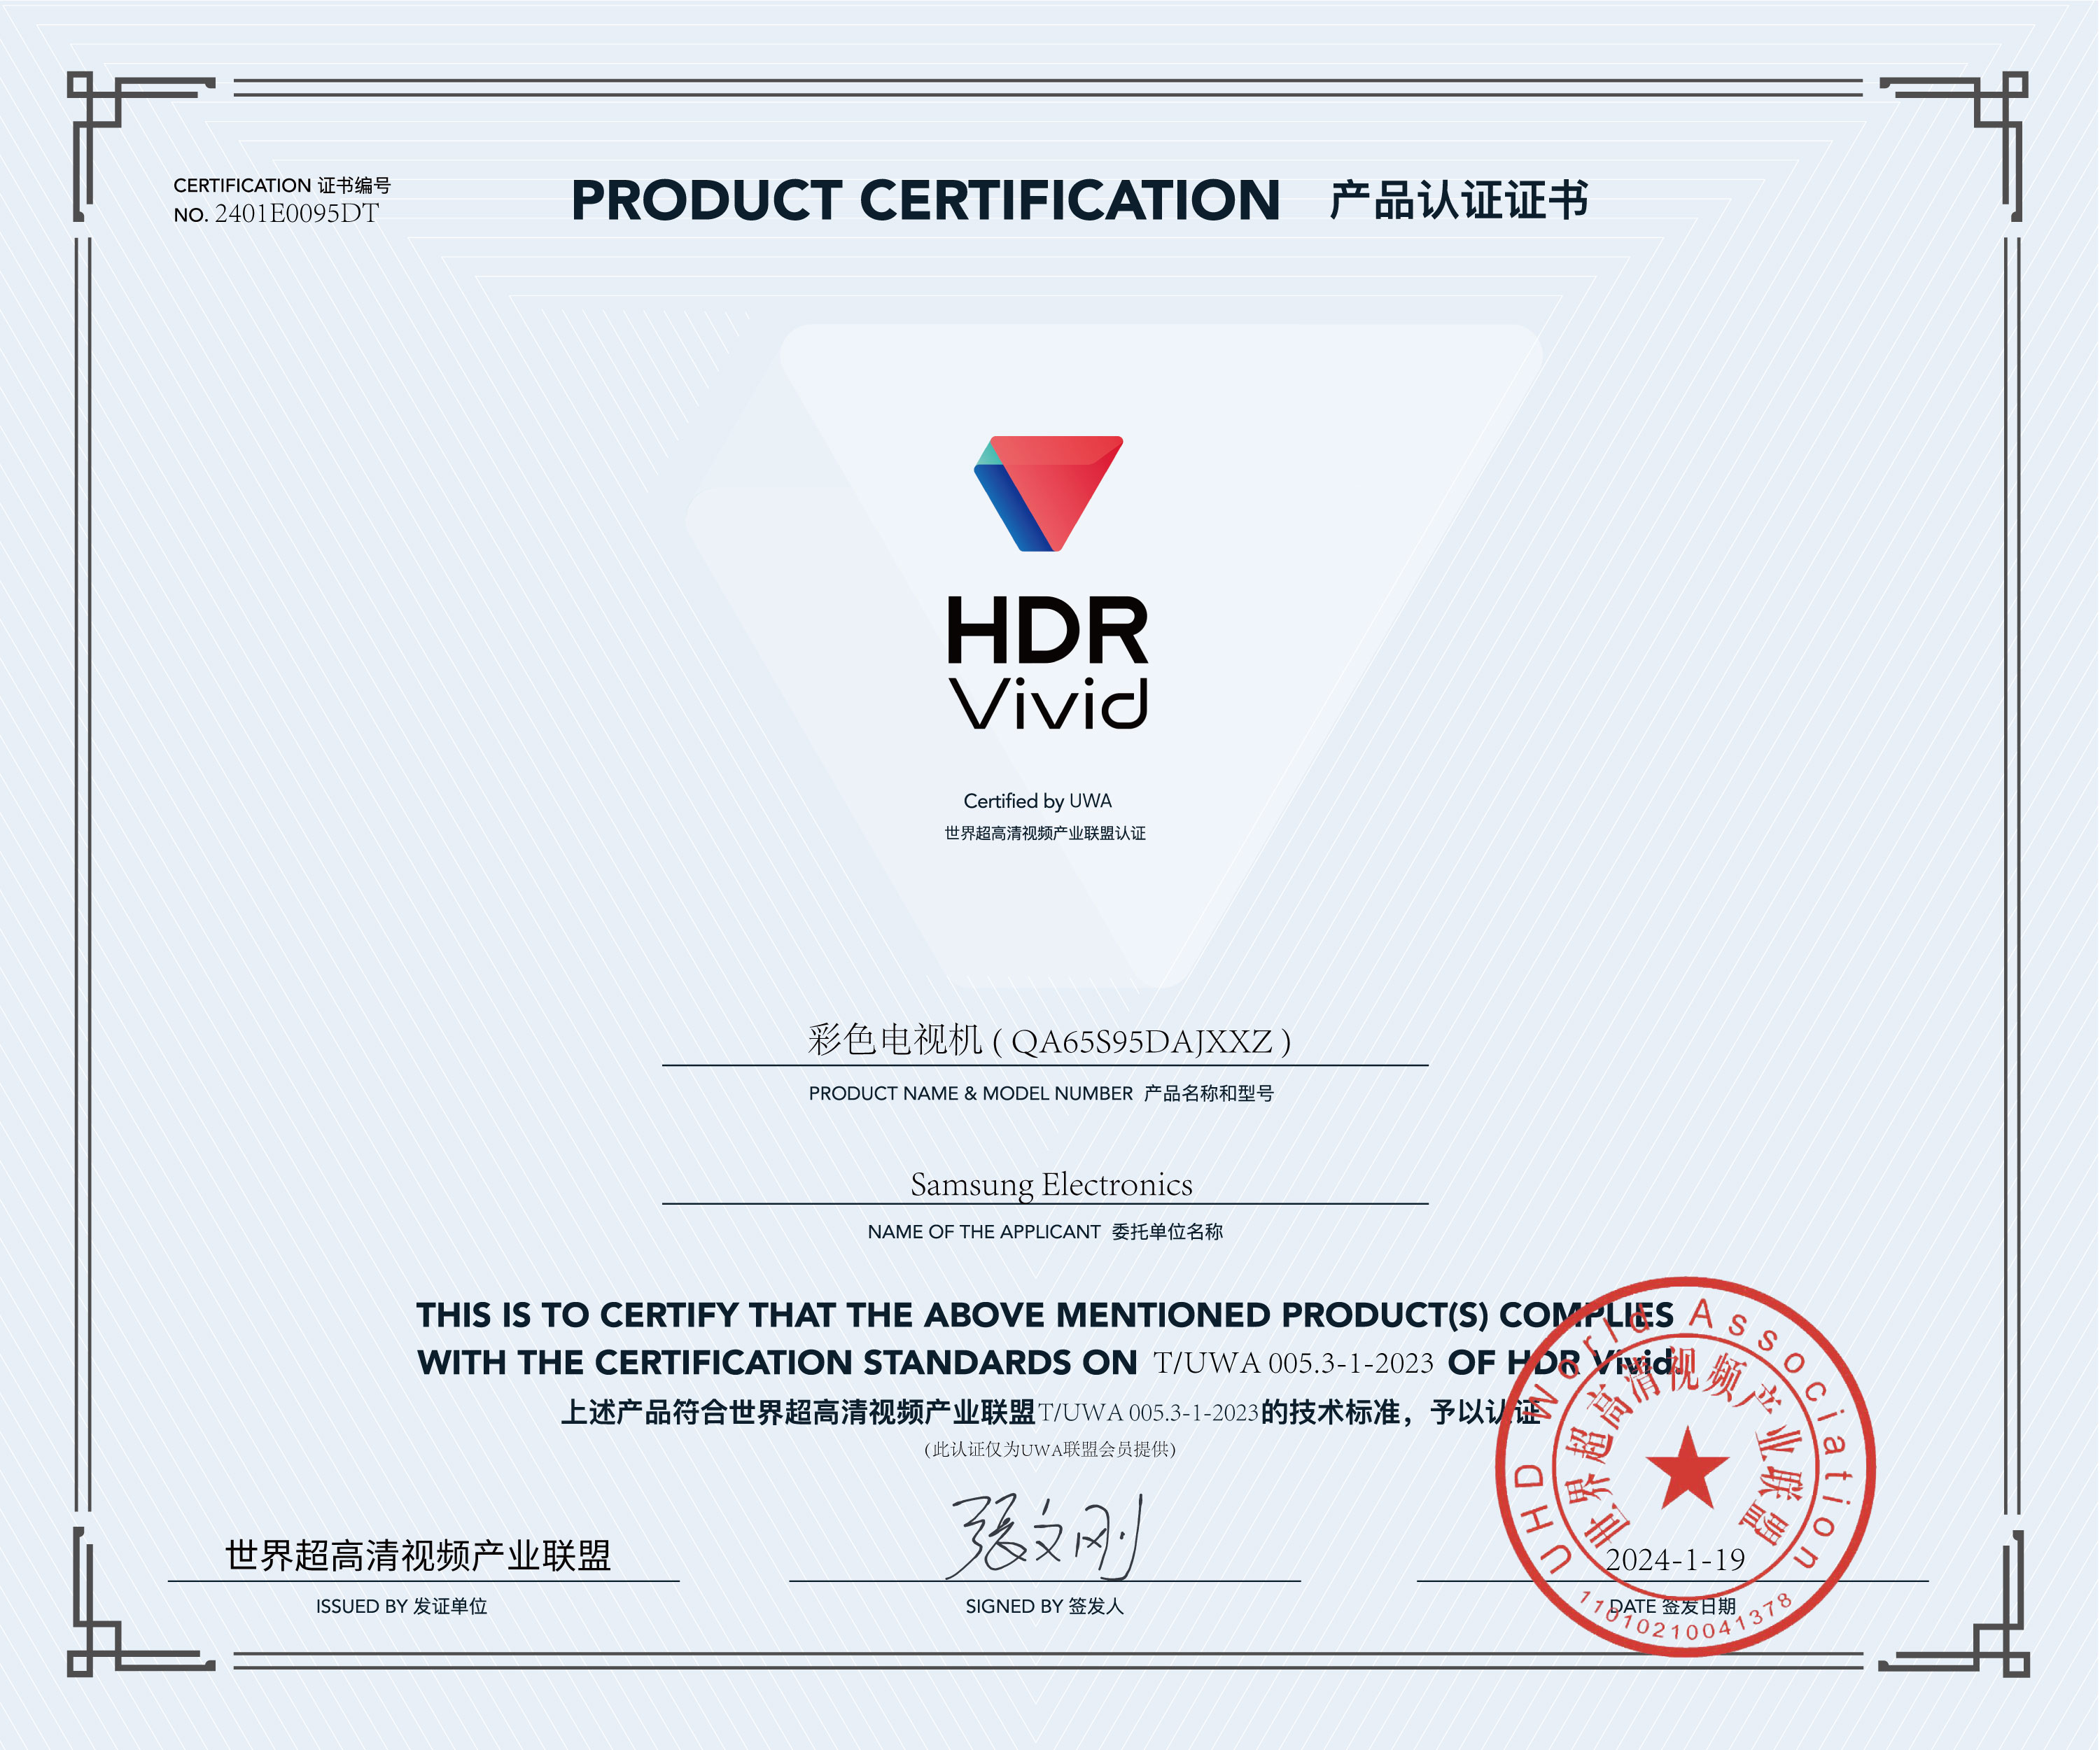 UWA-HDR认证证书-三星彩色电视机-(-QA65S95DAJXXZ-).jpg